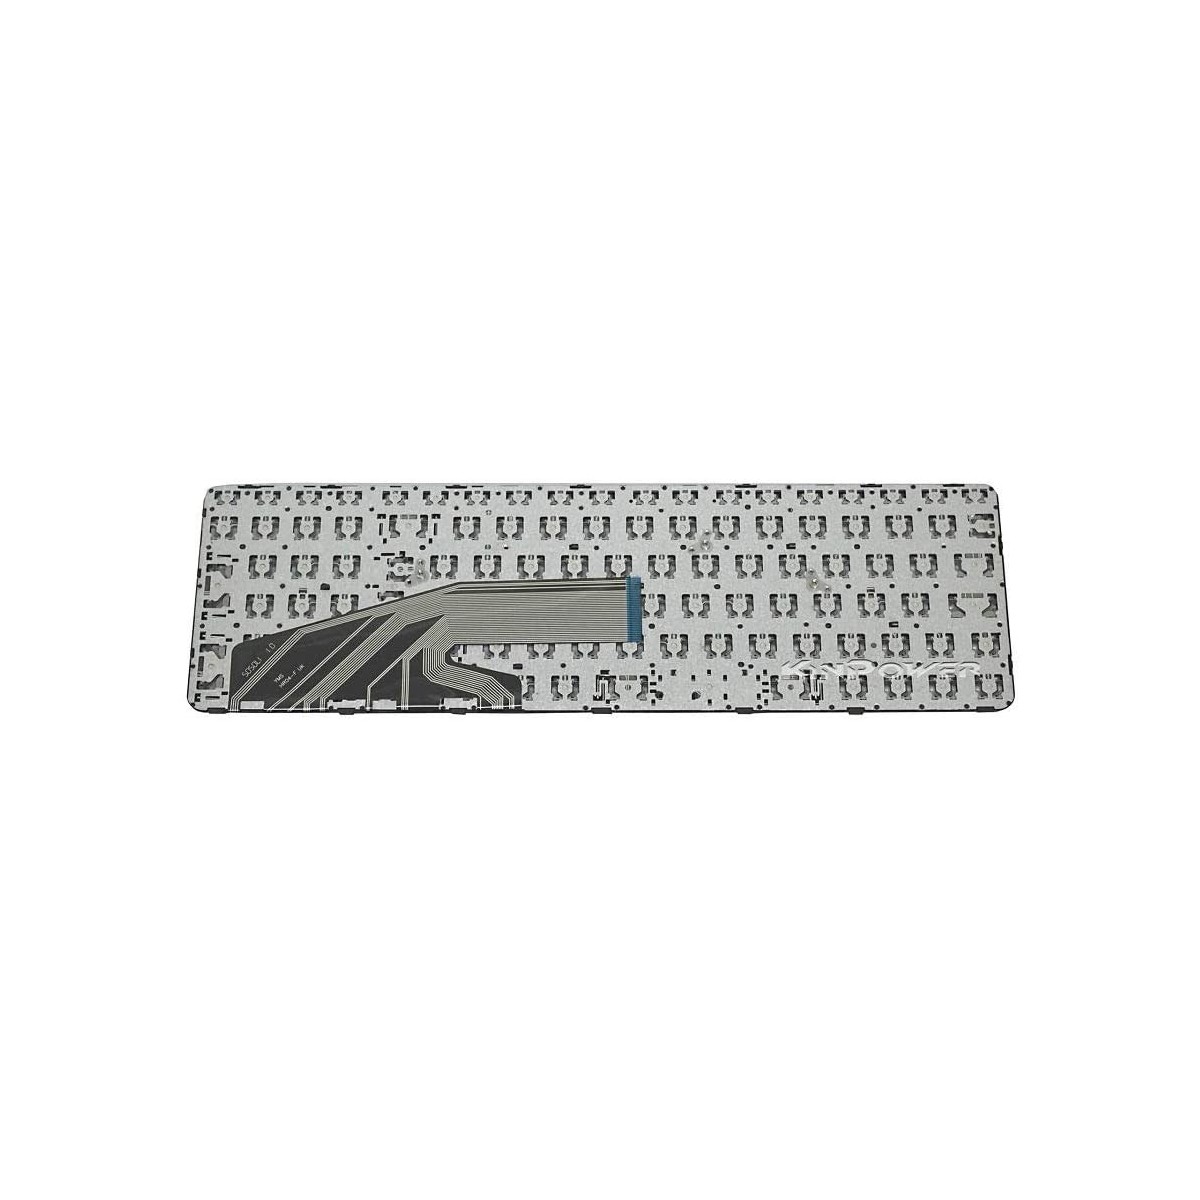 Clavier Français compatible Pour HP ProBook 470 G3 SERIES 836308-001